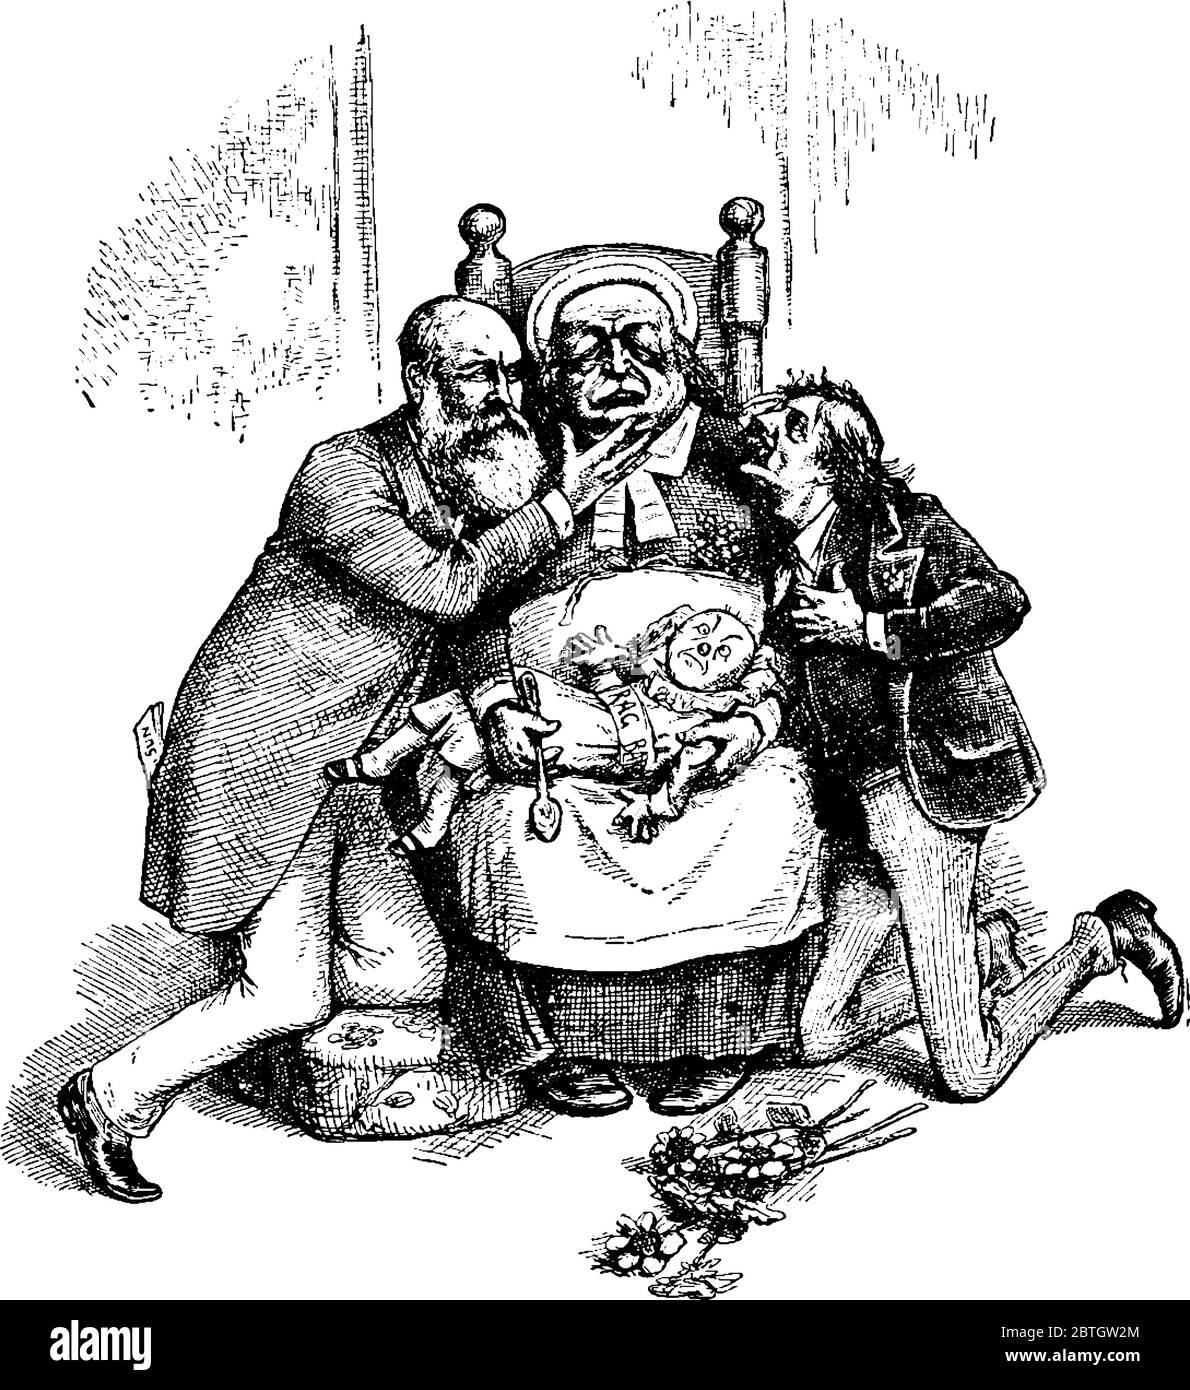 Fat Mann sitzt auf einem Stuhl Rag Baby und Löffel halten, zwei Männer knien neben dem dicken Mann, Vintage-Linie Zeichnung oder Gravur Illustration. Stock Vektor